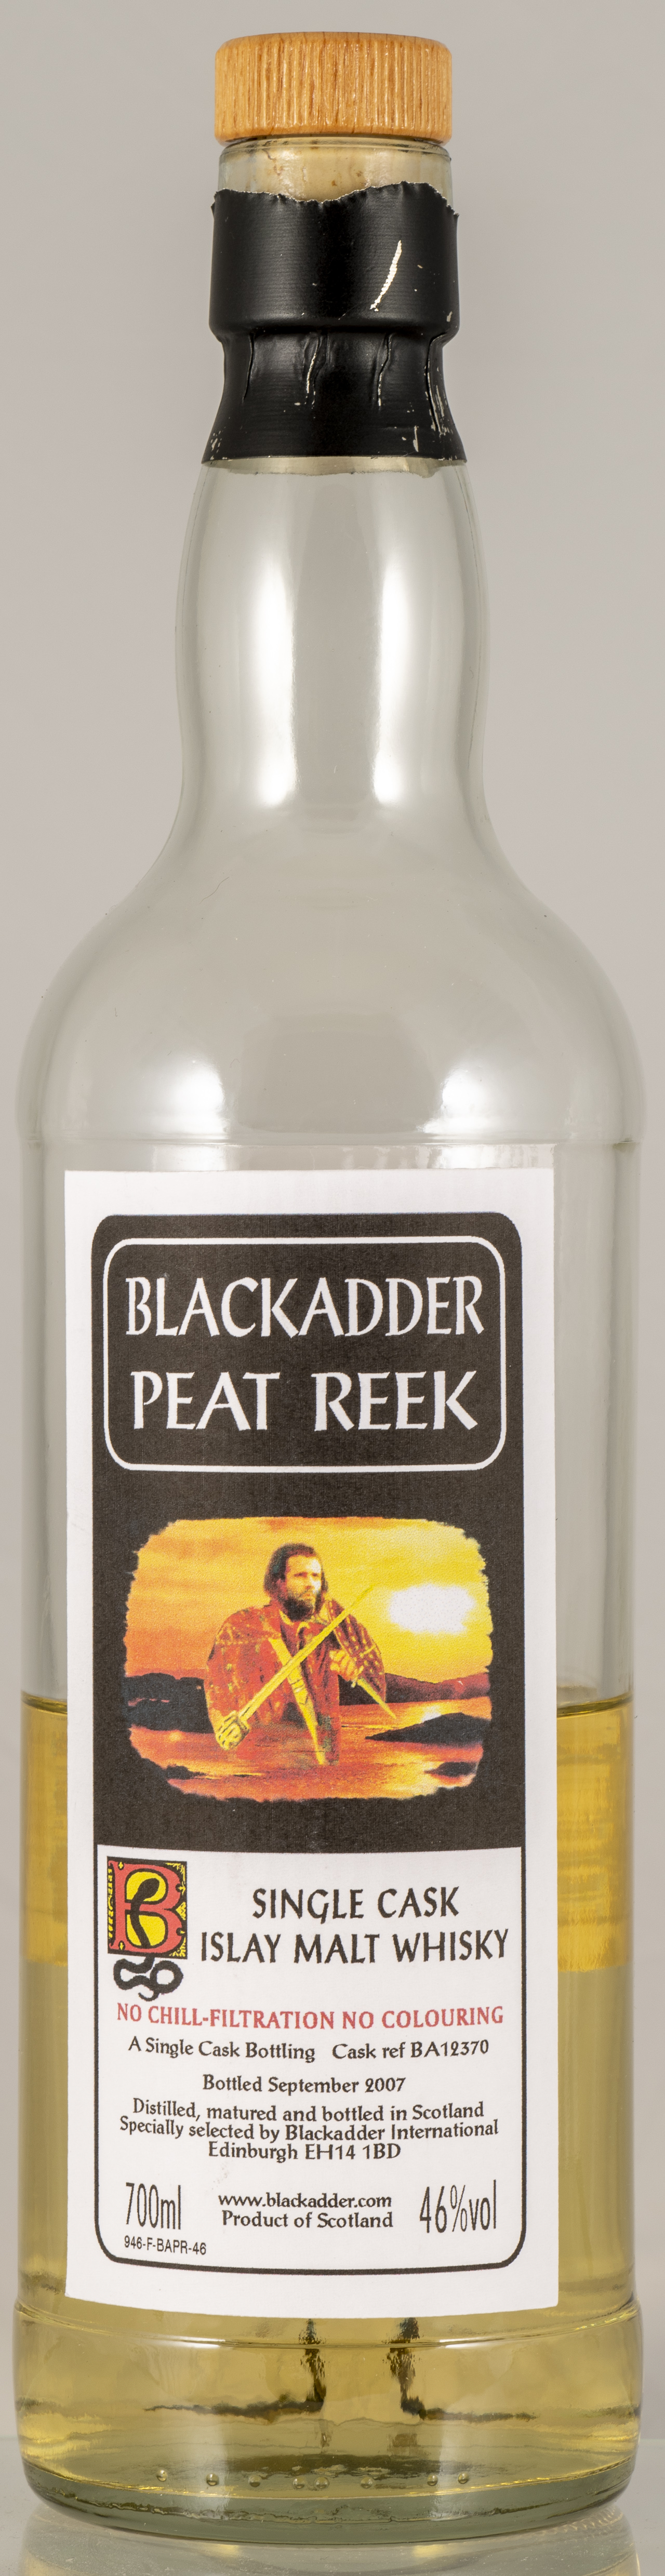 Billede: PHC_7084 - Blackadder Peat Reak - bottle front.jpg